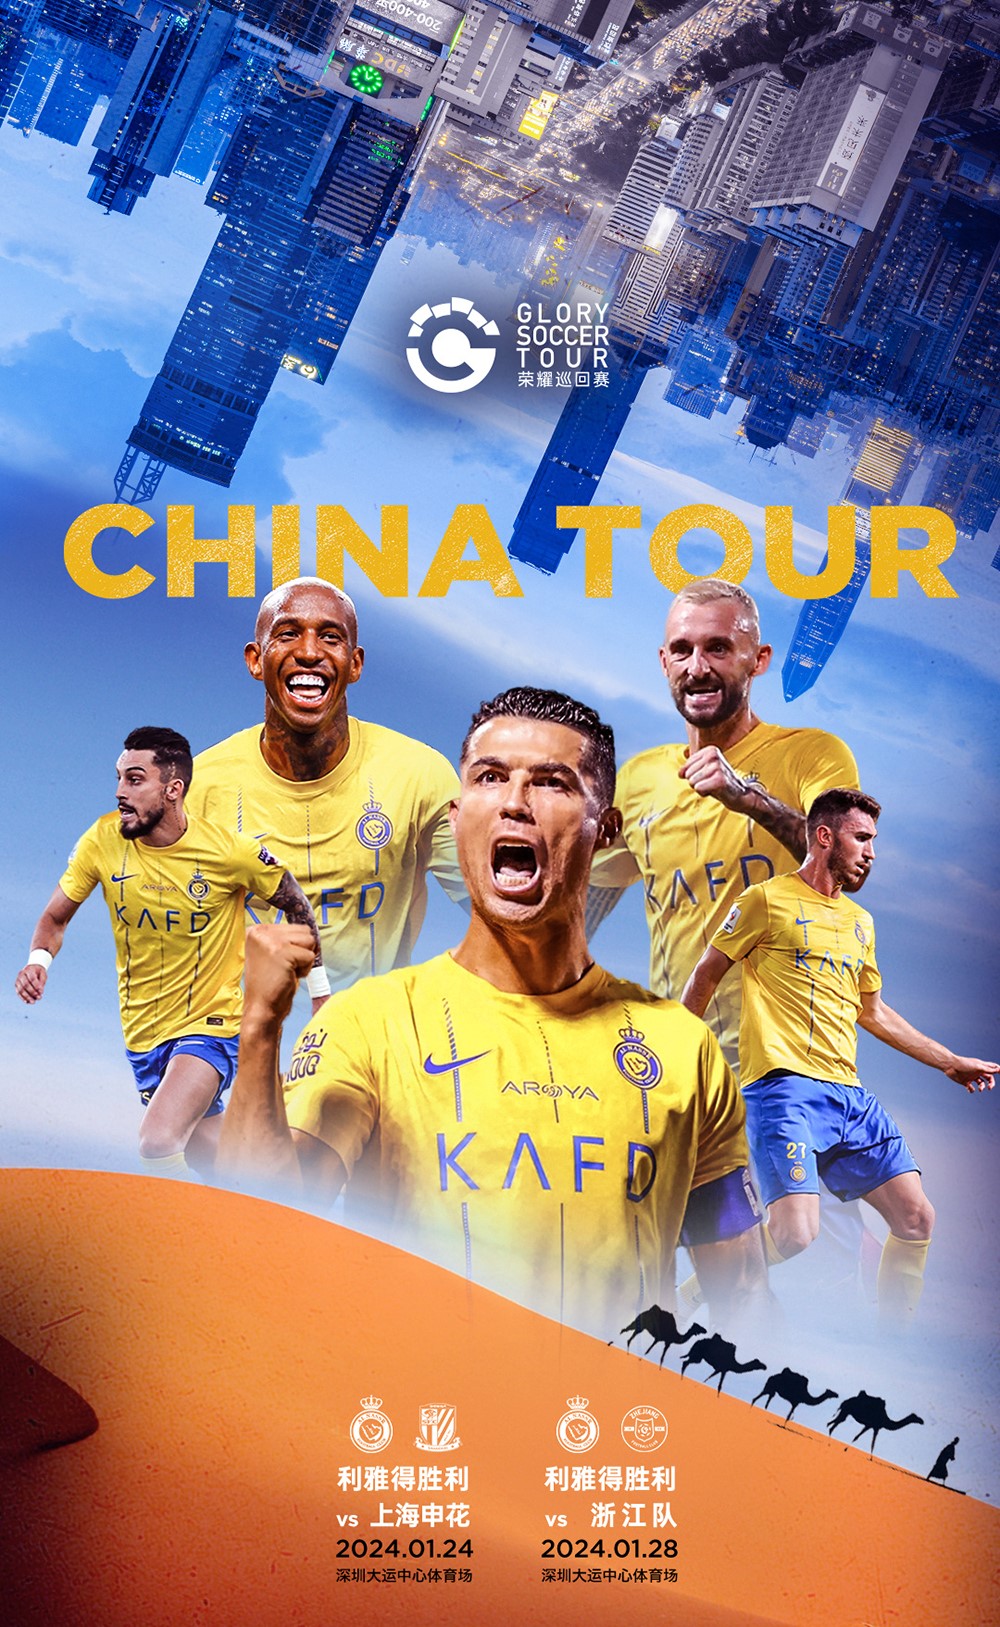 「榮耀巡回賽2024利雅得勝利中國行」比賽將於1月24日、1月28日在深圳市大運中心體育場舉行。